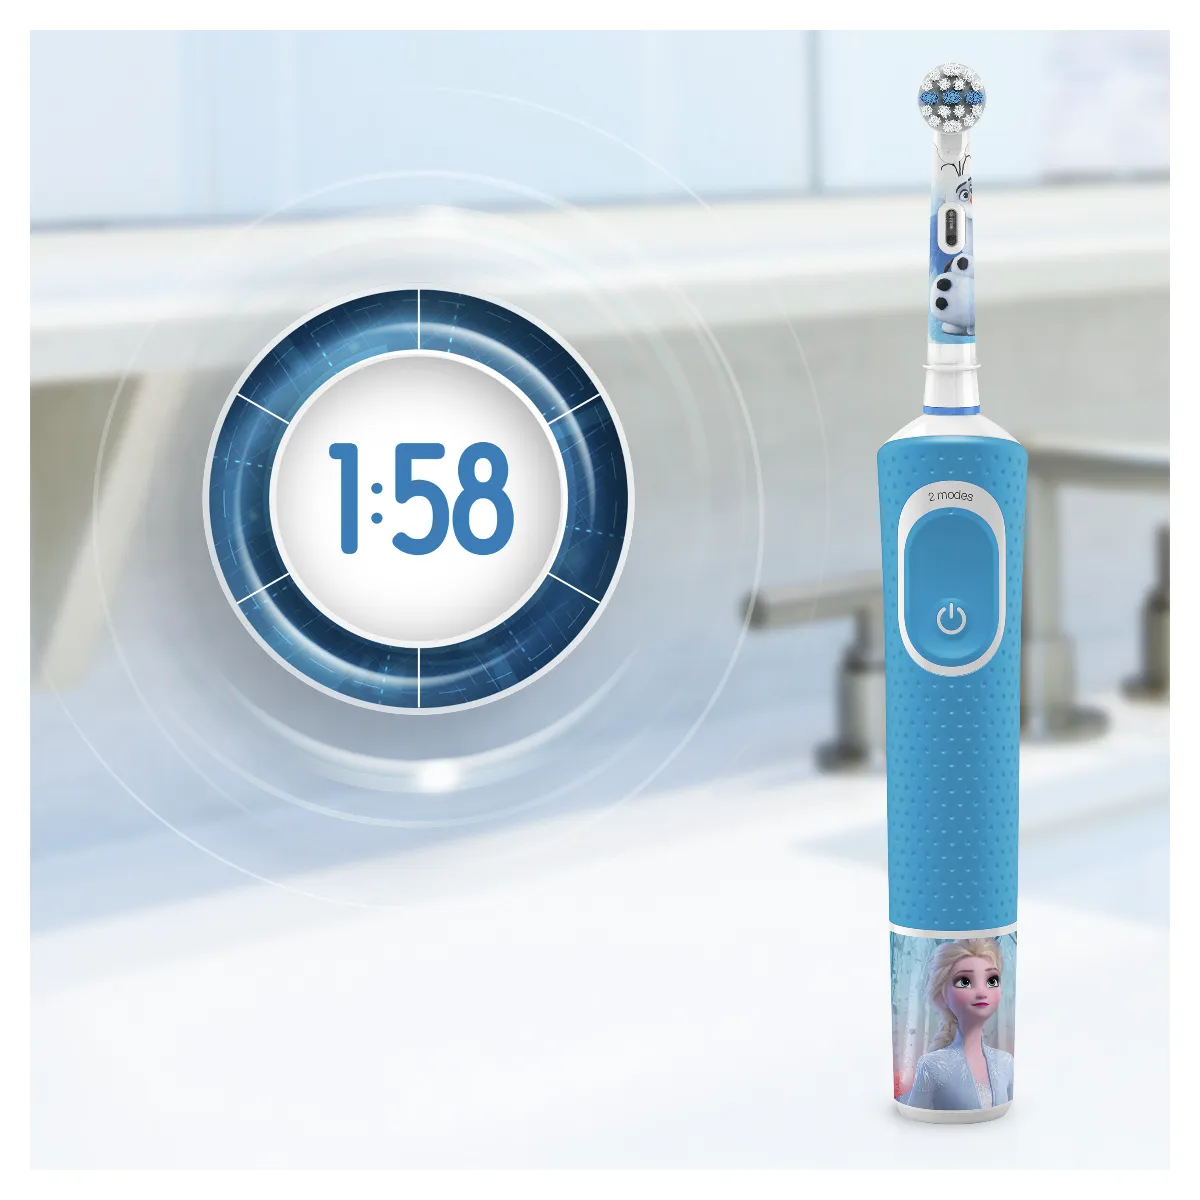 Oral-B Vitality Kids Frozen elektrický zubní kartáček + cestovní pouzdro